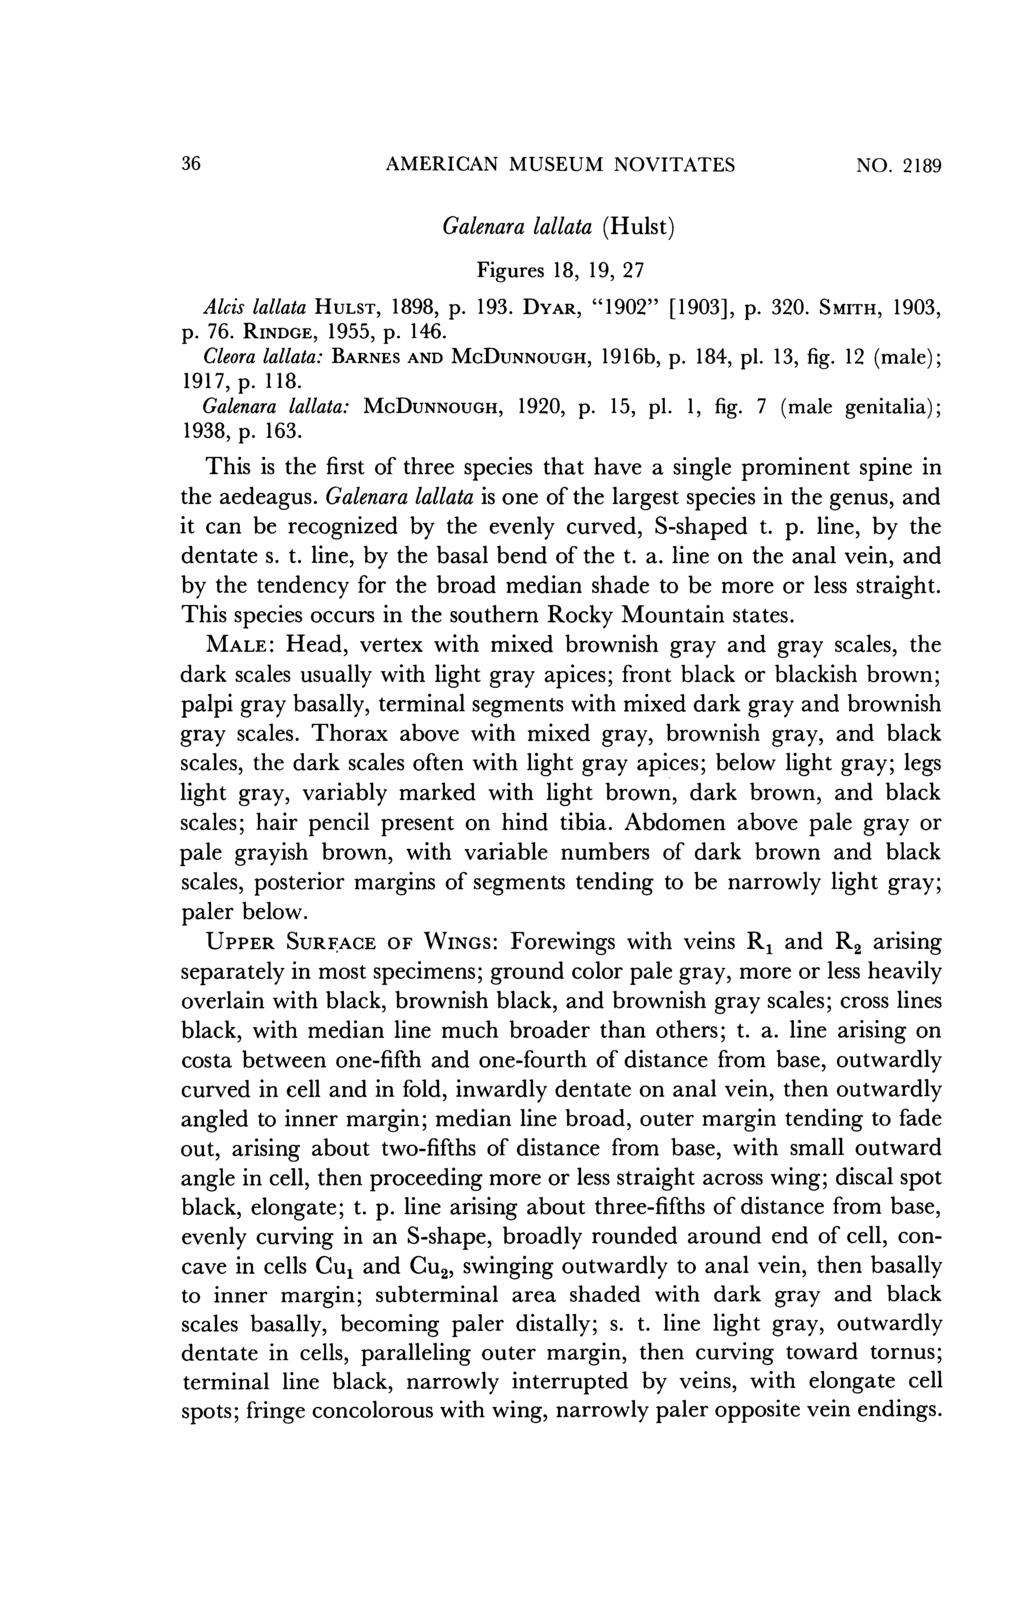 36 AMERICAN MUSEUM NOVITATES NO. 2189 Galenara lallata (Hulst) Figures 18, 19, 27 Alcis lallata HULST, 1898, p. 193. DYAR, "1902" [1903], p. 320. S MITH, 1903, p. 76. RINDGE, 1955, p. 146.